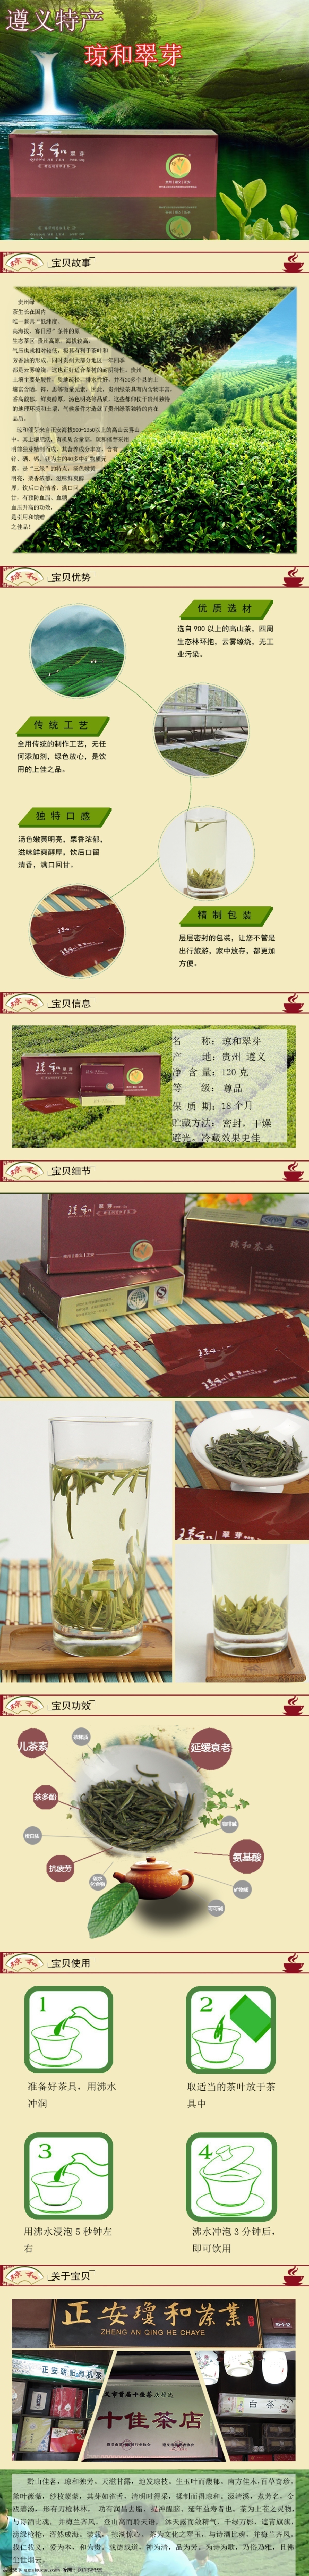 琼和翠芽 遵义 特产 茶叶素材 特产素材 茶叶详情页 原创设计 原创淘宝设计